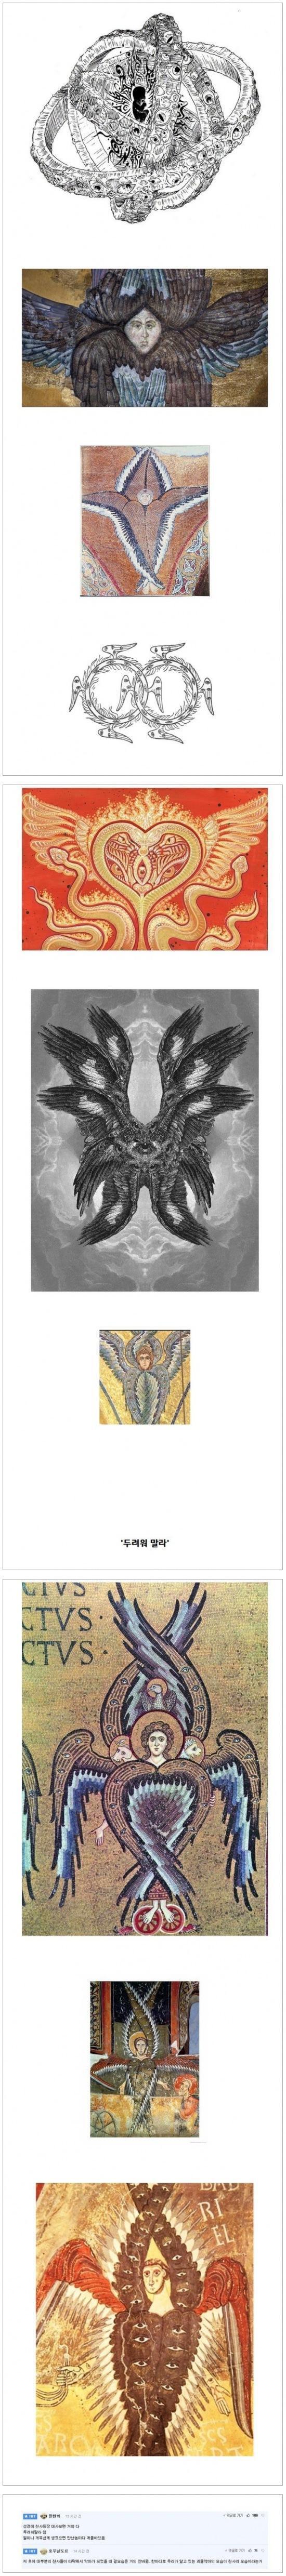 성경에서 묘사한 천사의 형상